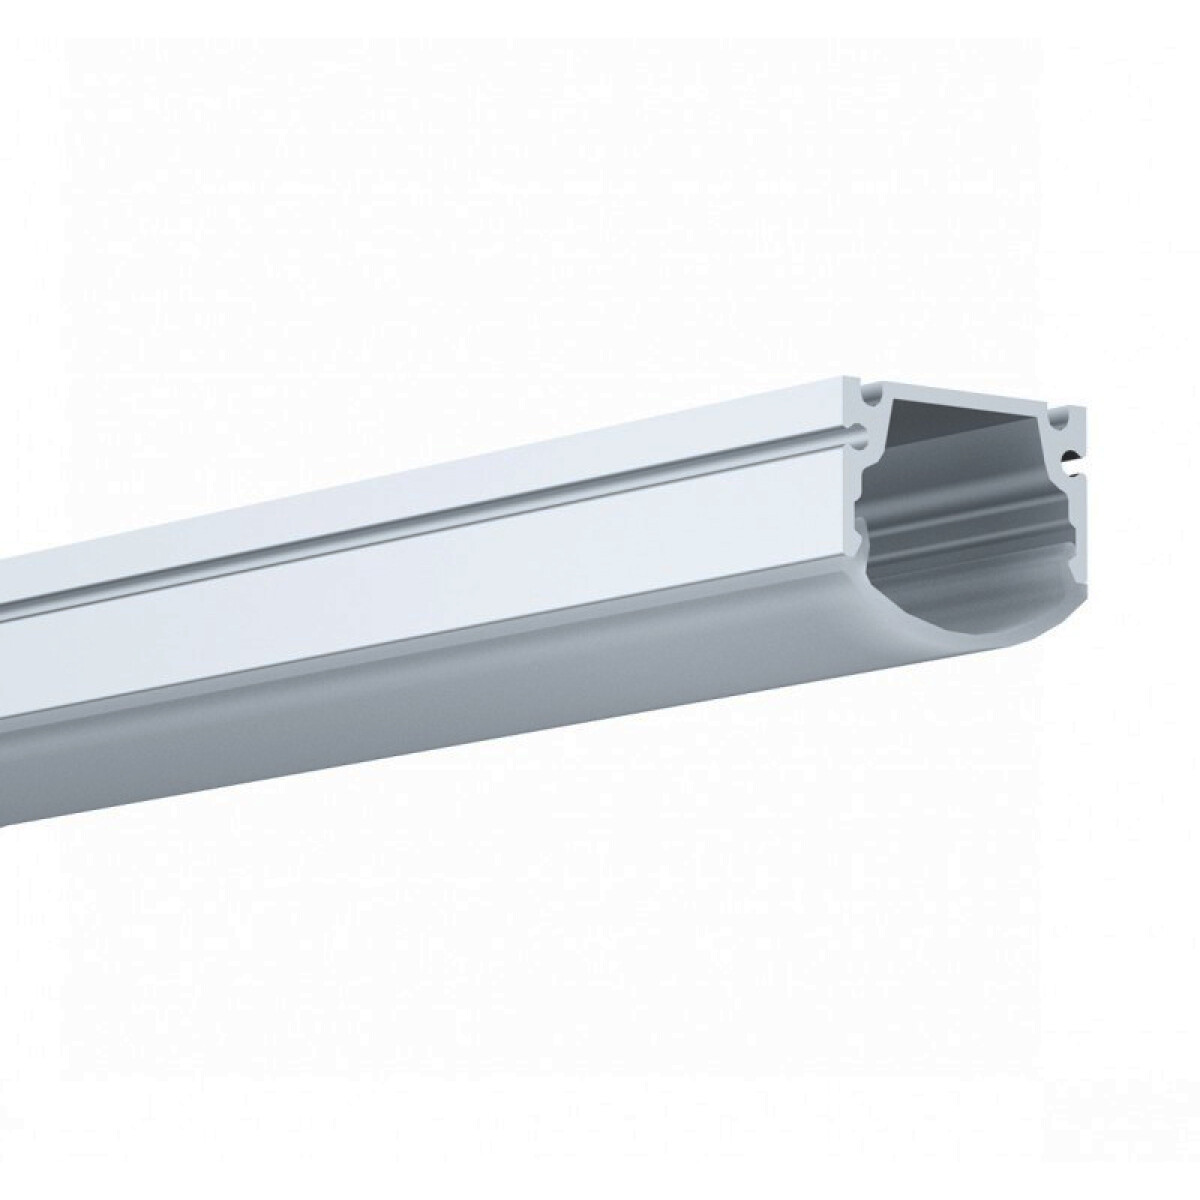 Regleta aluminio para cinta LED 2m 17x9mm aplicar - IX1633 